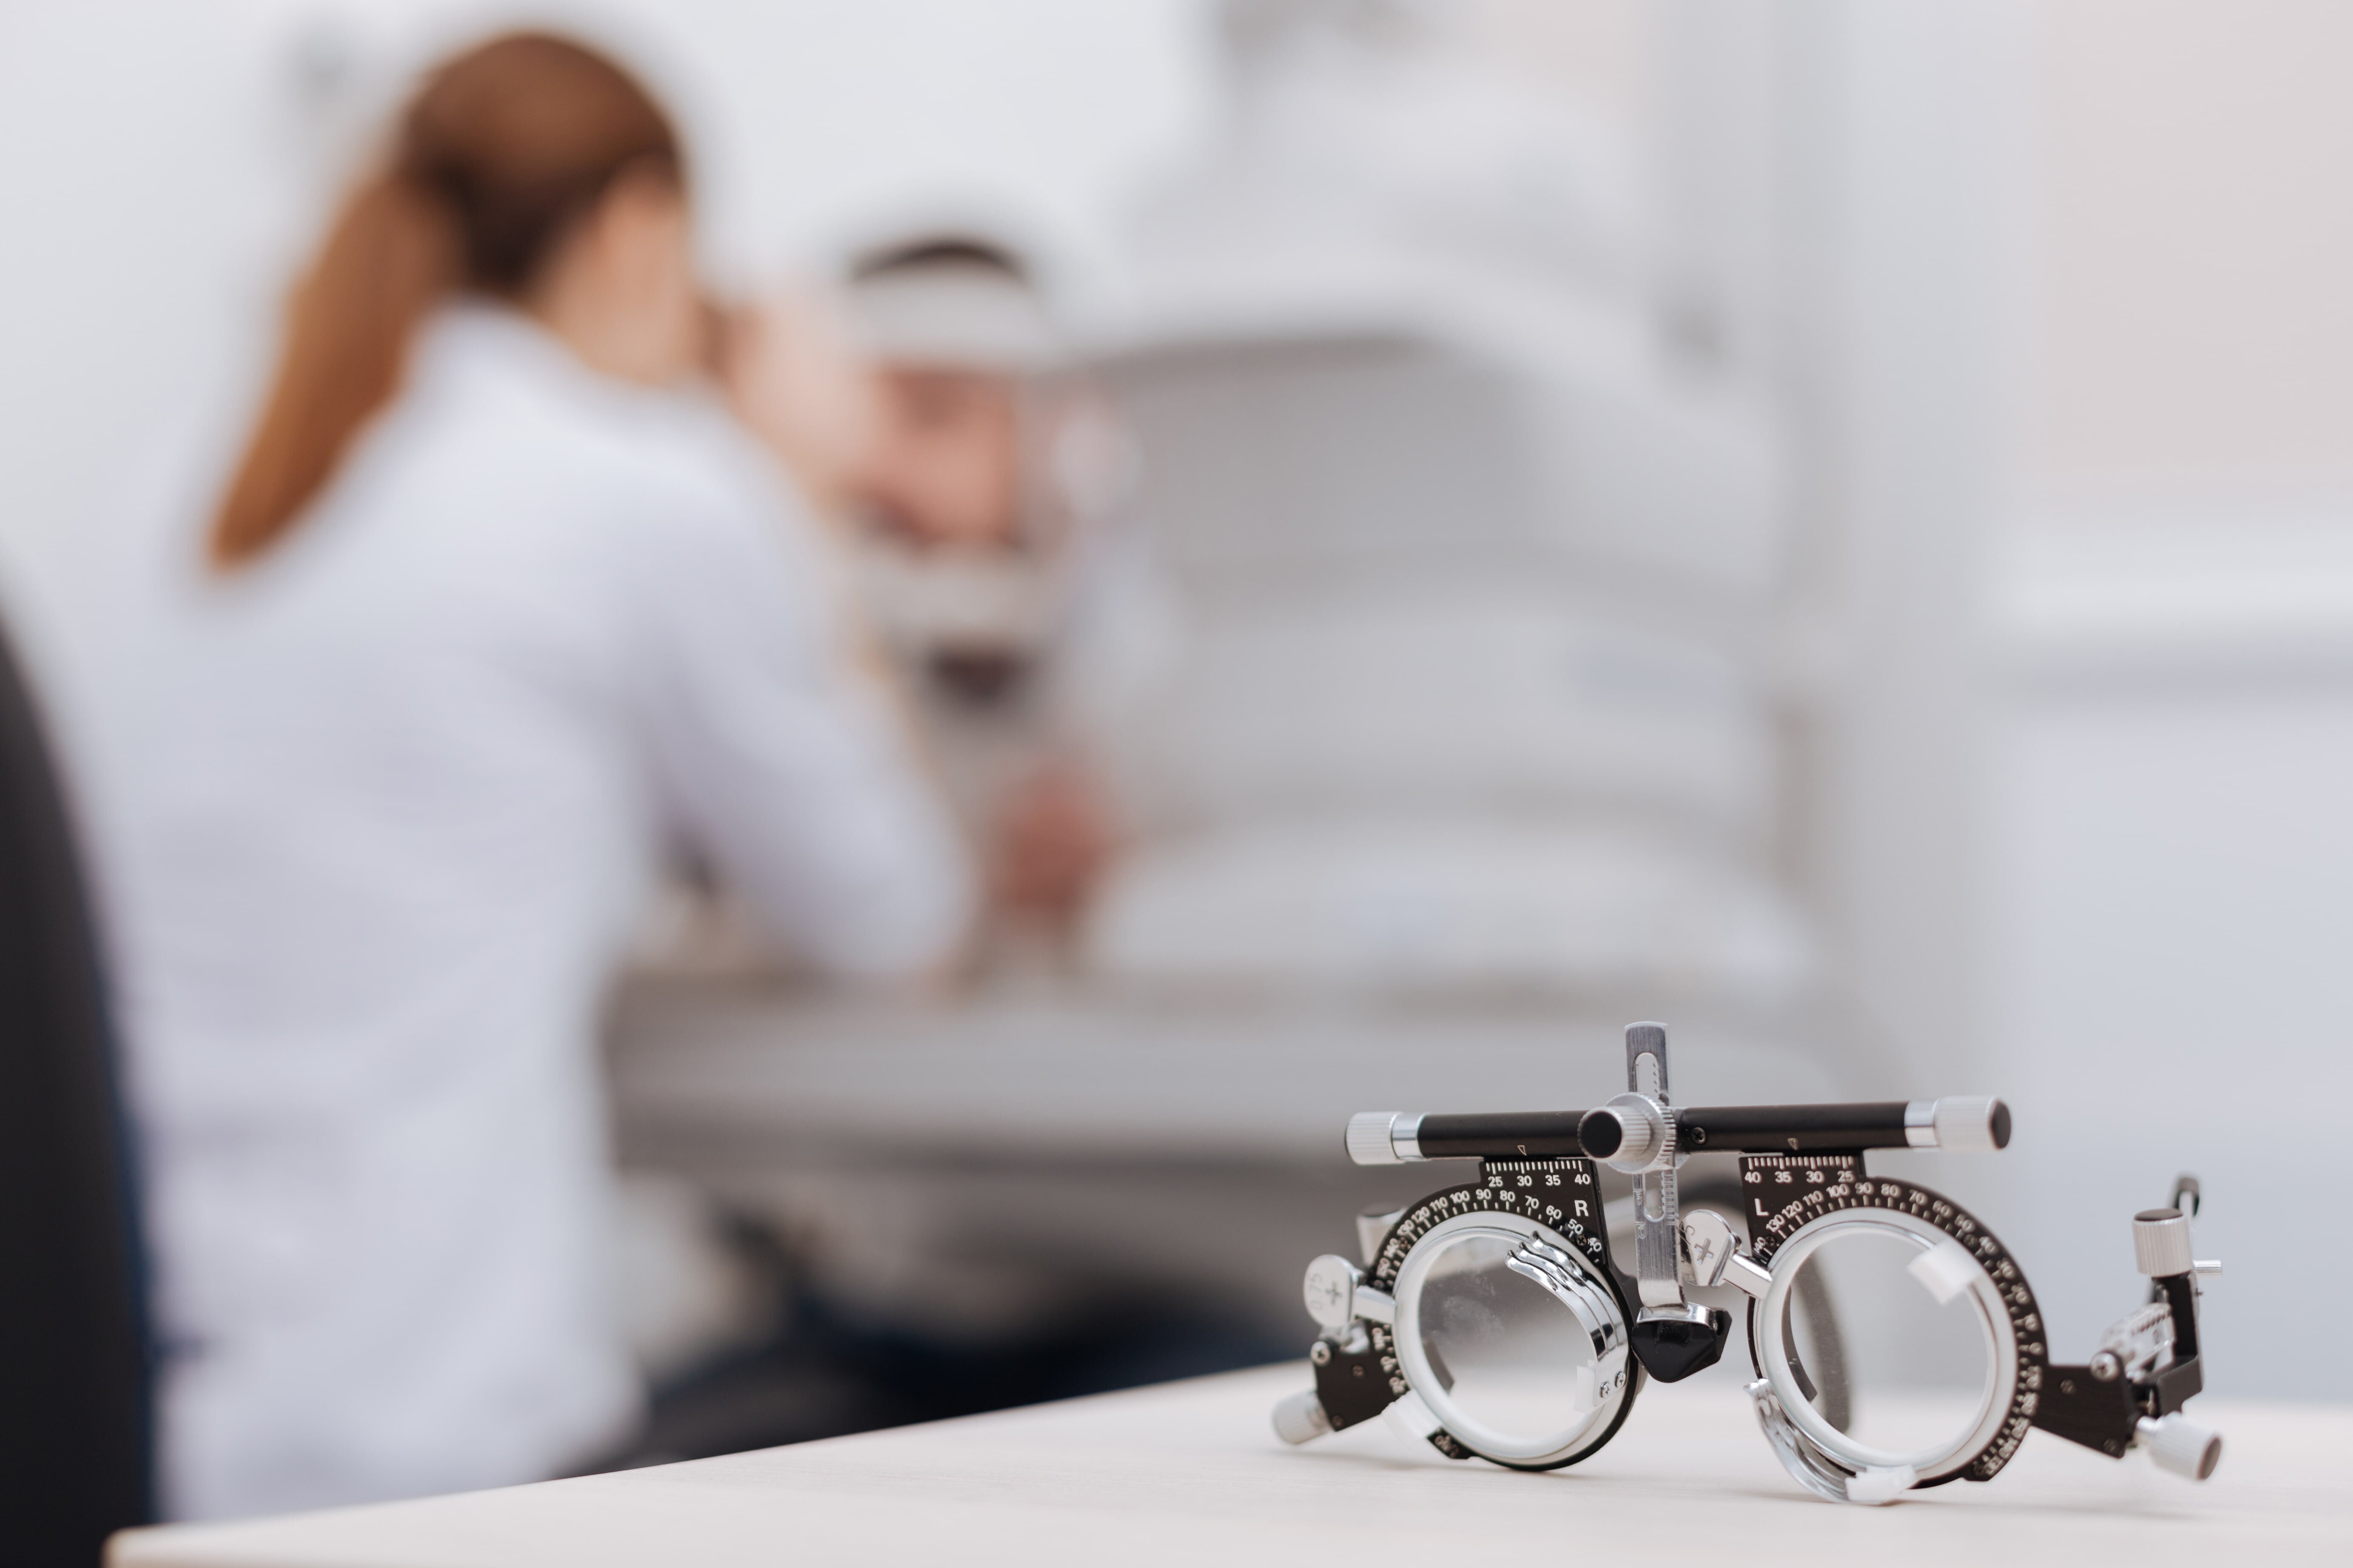 Im Hintergrund führt eine Augenärztin eine Untersuchung durch. Im Vordergrund liegt eine Augenarztbrille